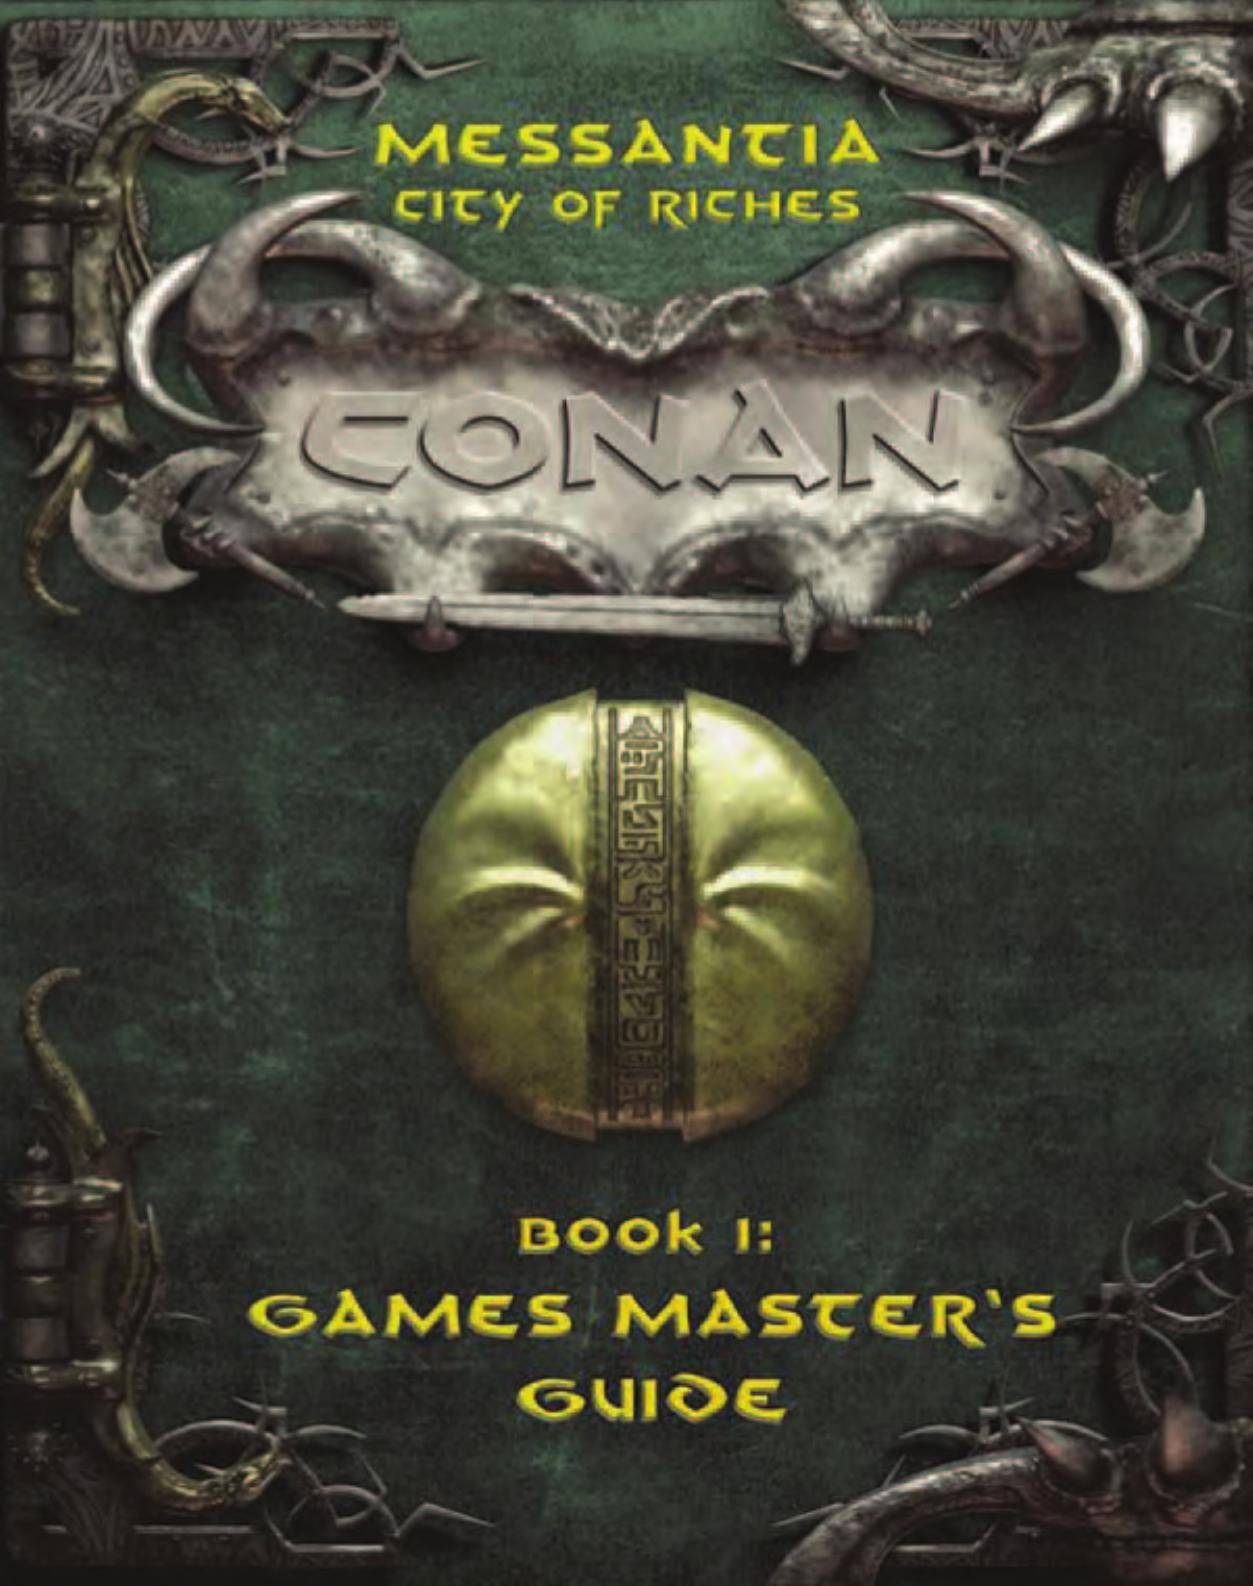 Conan D20 1e Messantia City of Riches